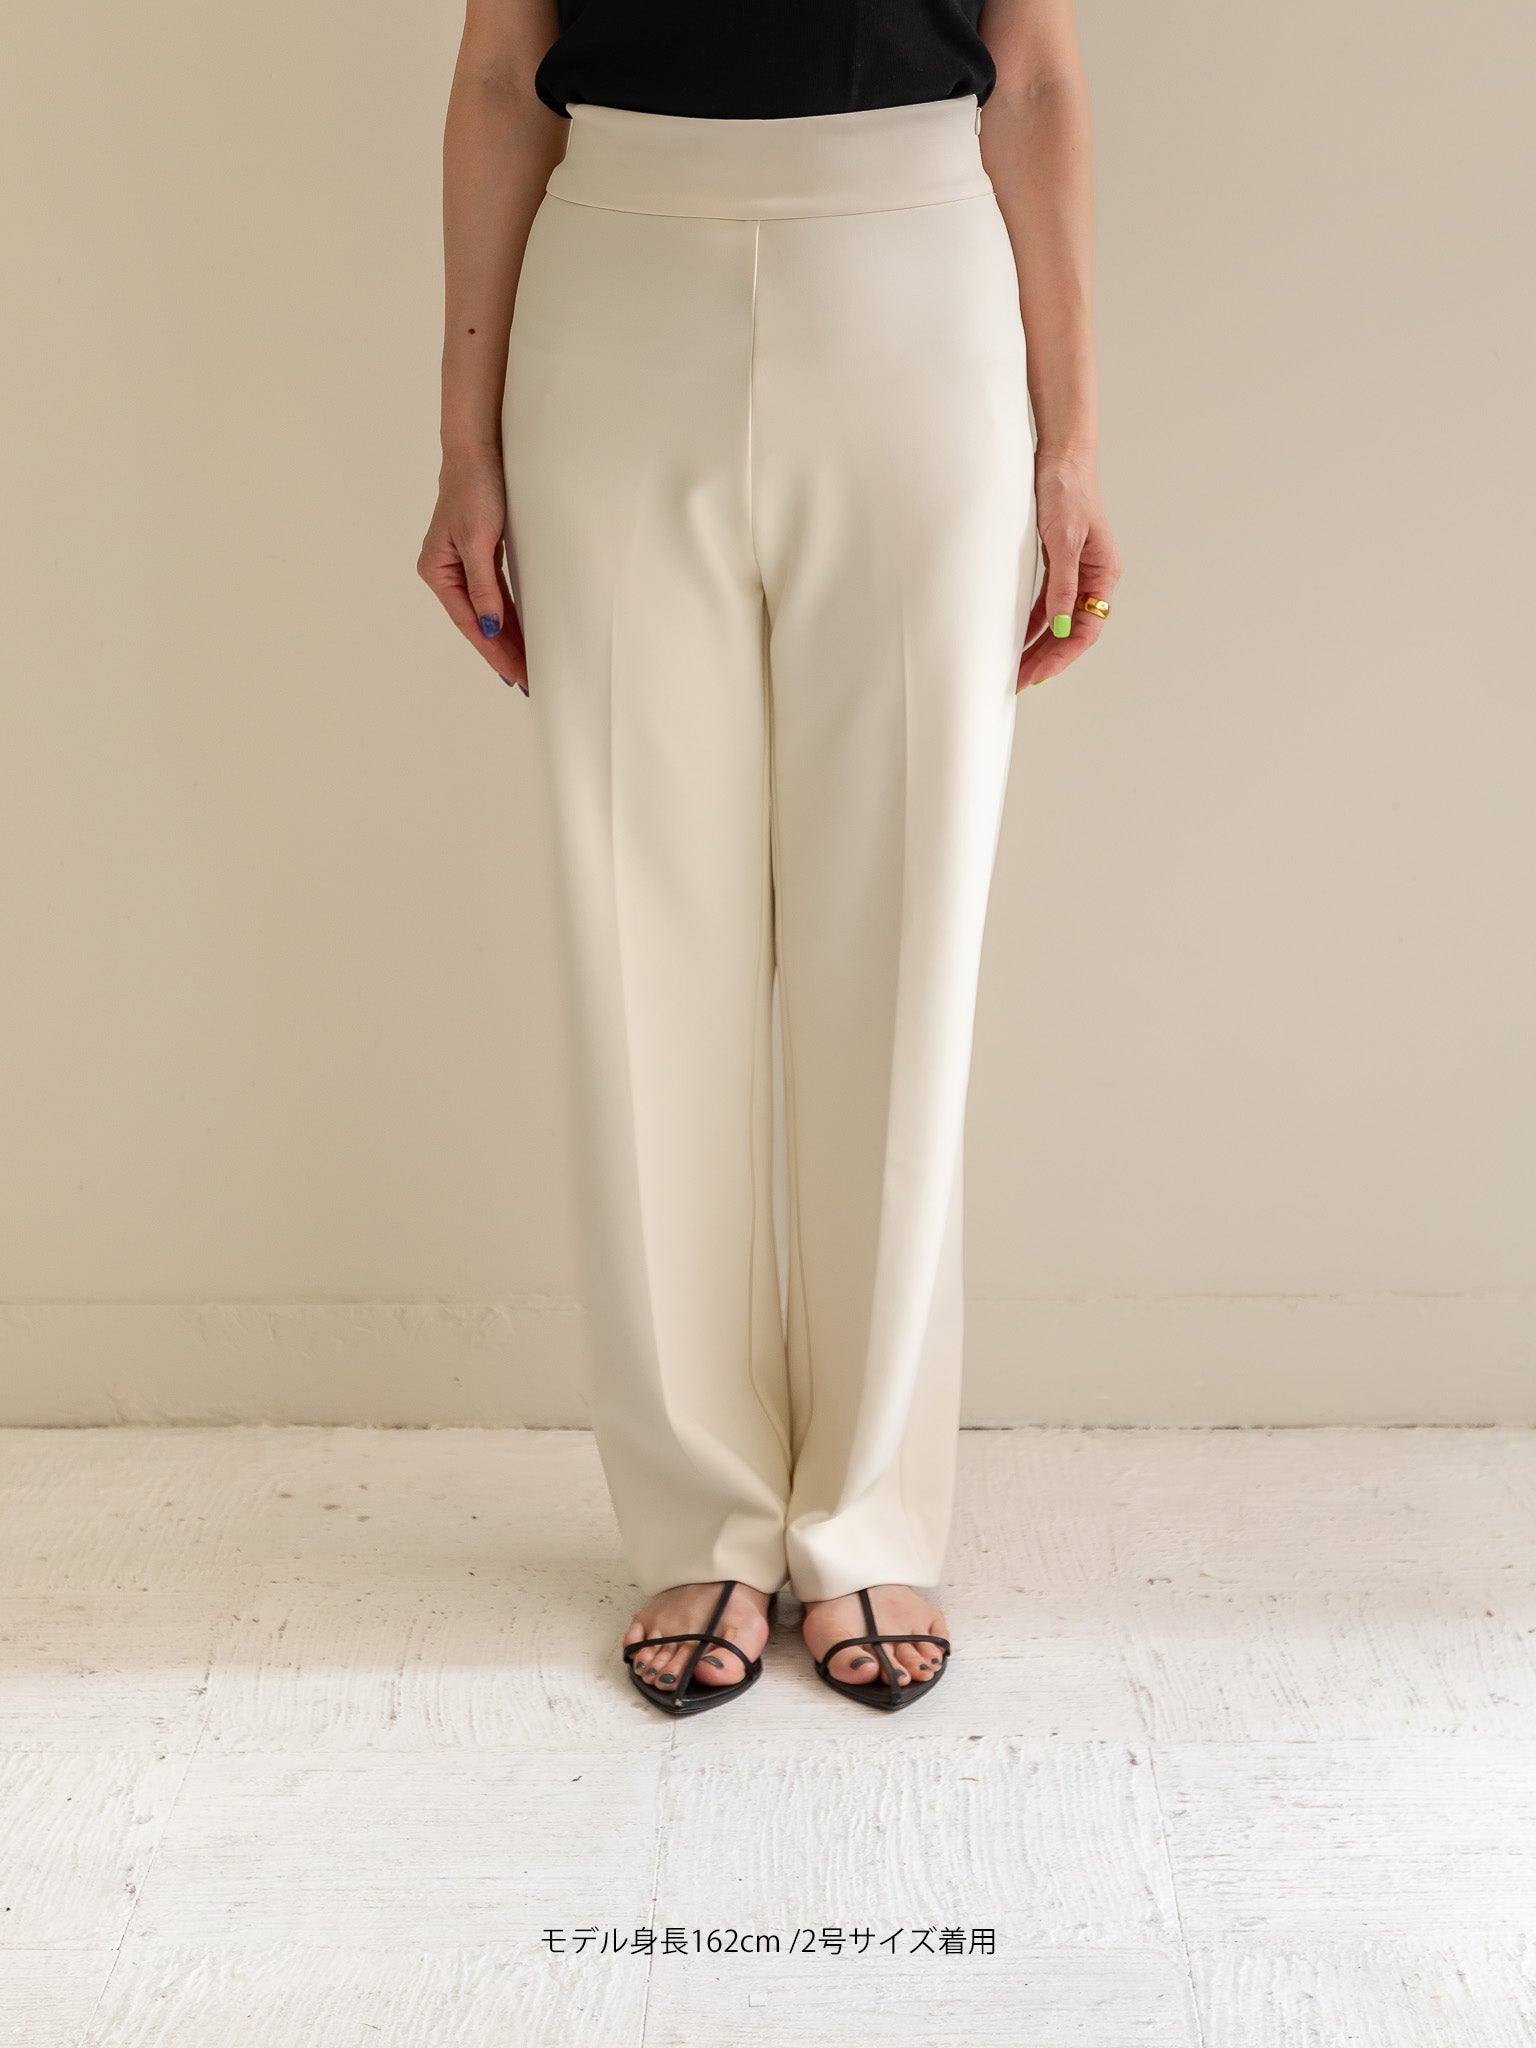 【予約販売】BIRAKU Pants -Off white